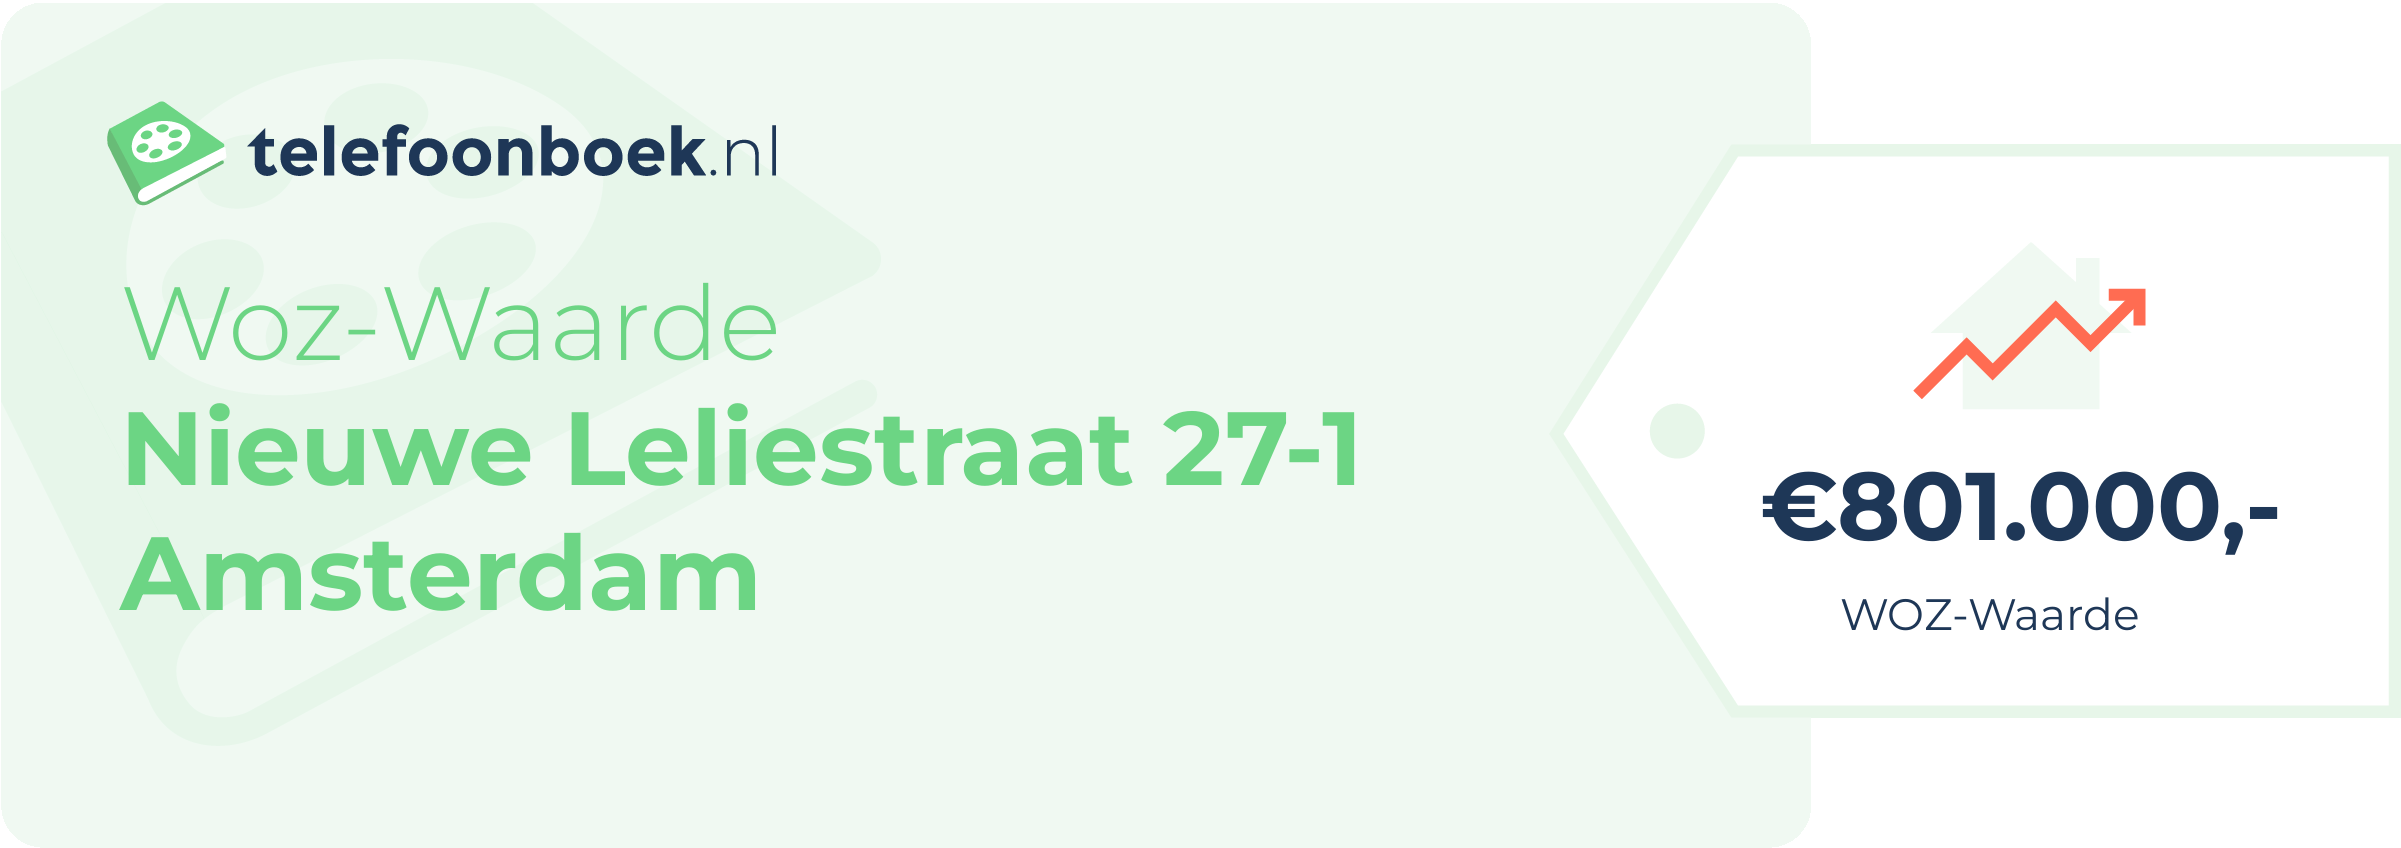 WOZ-waarde Nieuwe Leliestraat 27-1 Amsterdam